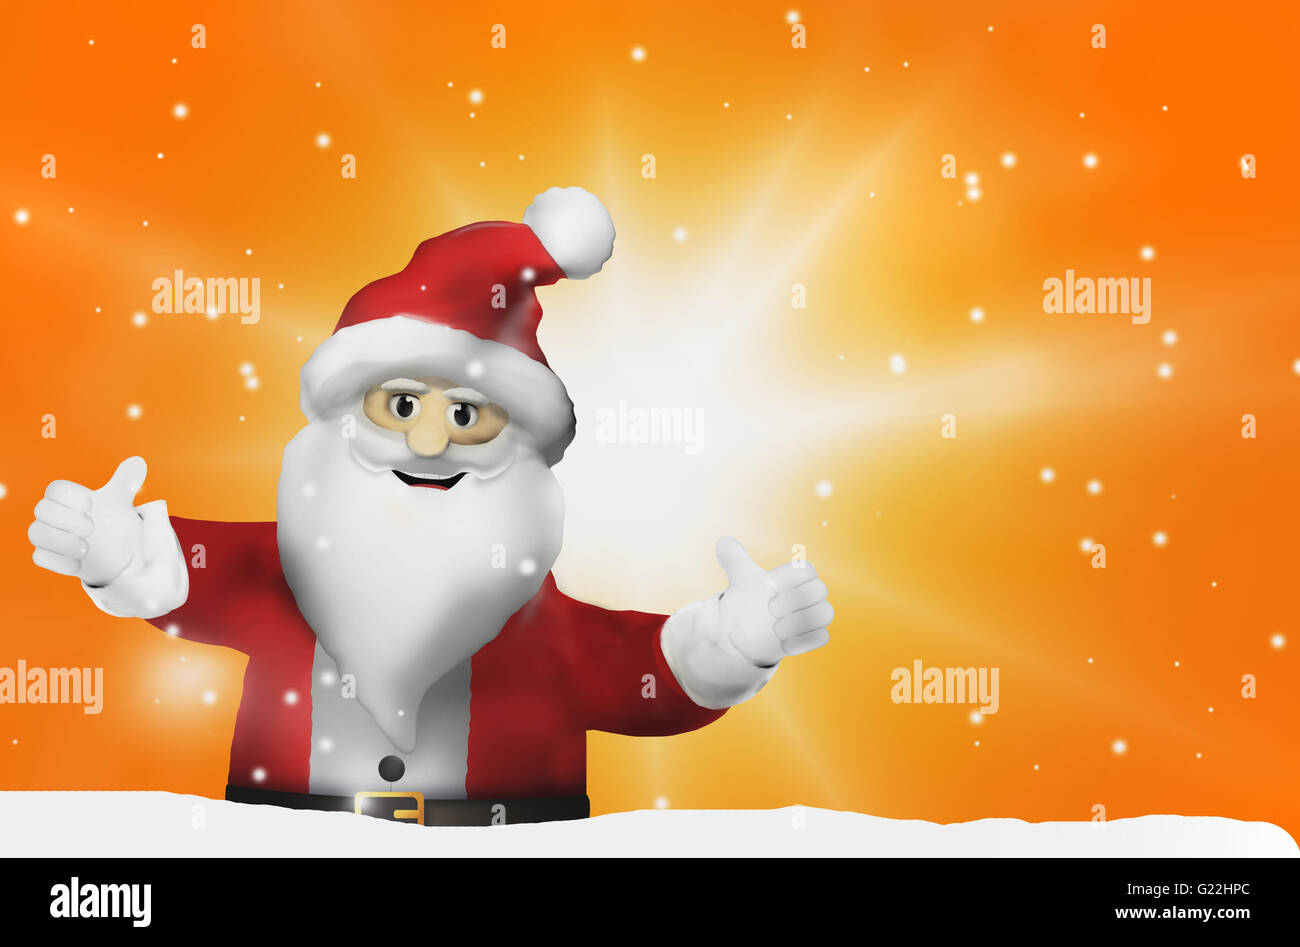 Santa Claus Thumbs Up Stock Photo